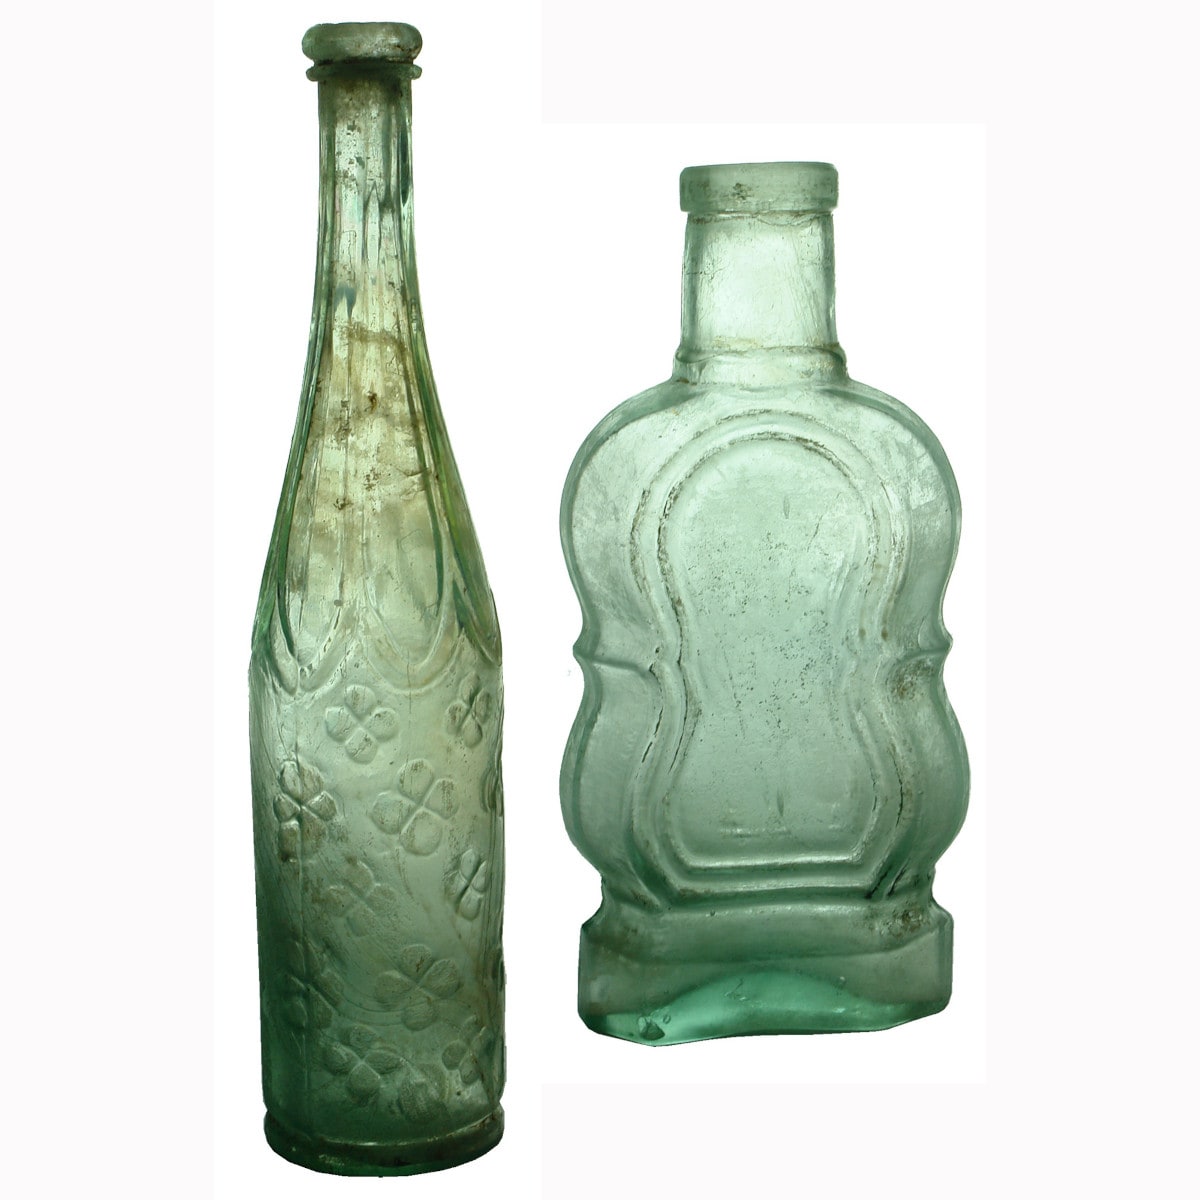 Pair of Goldfields Bottles: Violin Pickle & Clover Leaf Salad Oil. Damaged.